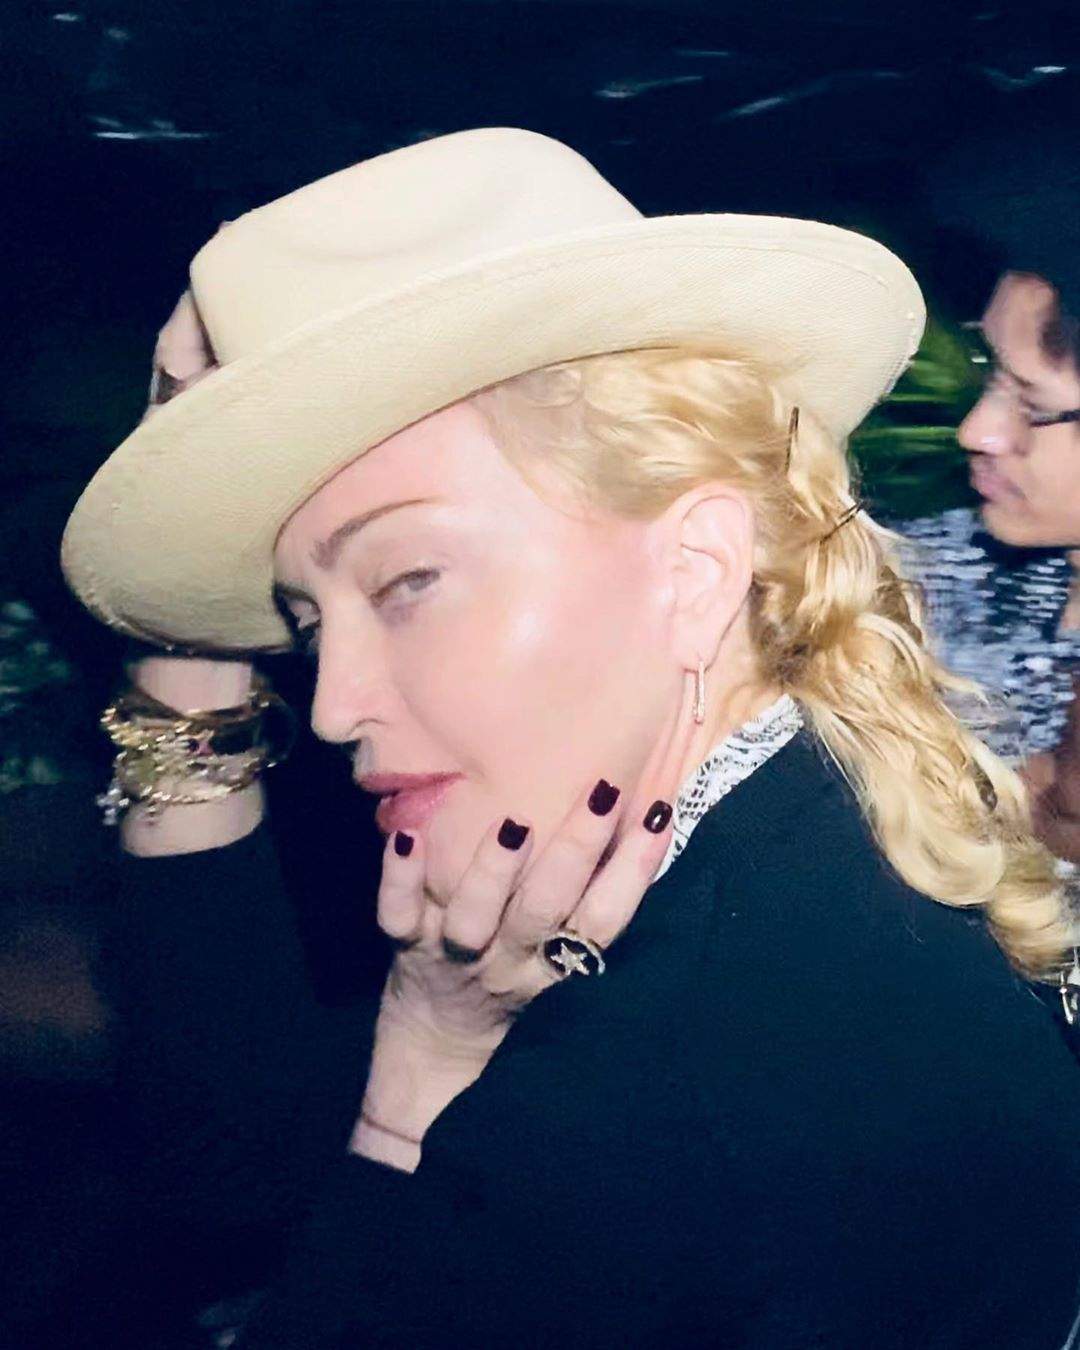 Madonna şi-a anulat al 8-lea concert! “Trebuie să îmi ascult corpul”. Ce a păţit artista